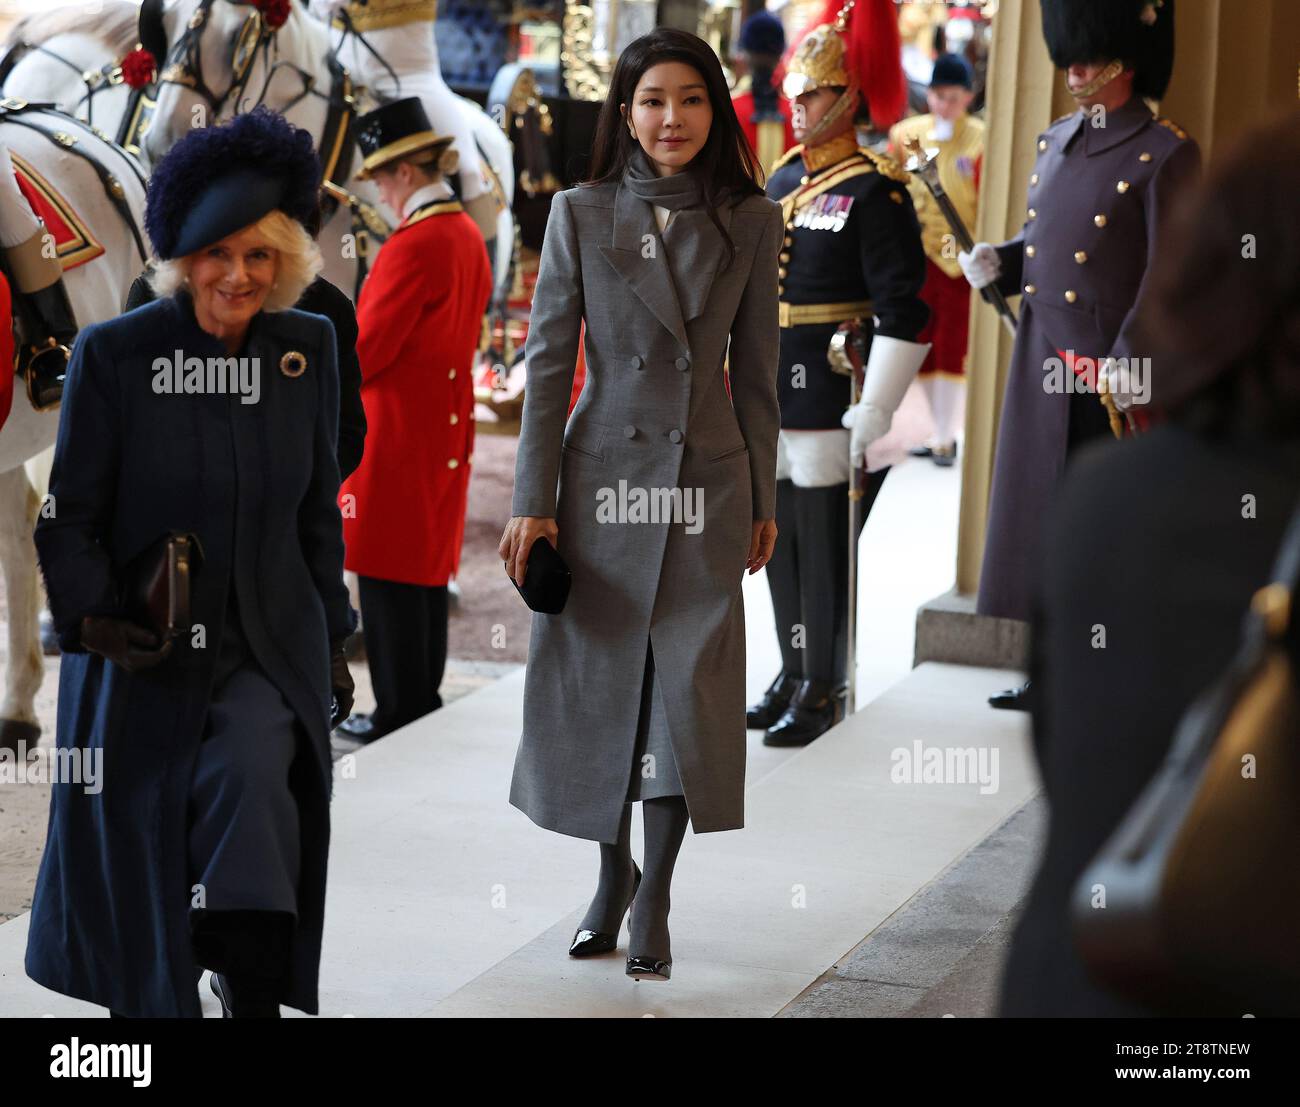 Die erste Dame von Südkorea Kim Keon Hee und Königin Camilla kommen am ersten Tag des Staatsbesuchs des südkoreanischen Präsidenten Yoon Suk Yeol in Großbritannien im Buckingham Palace an. Bilddatum: Dienstag, 21. November 2023. Stockfoto